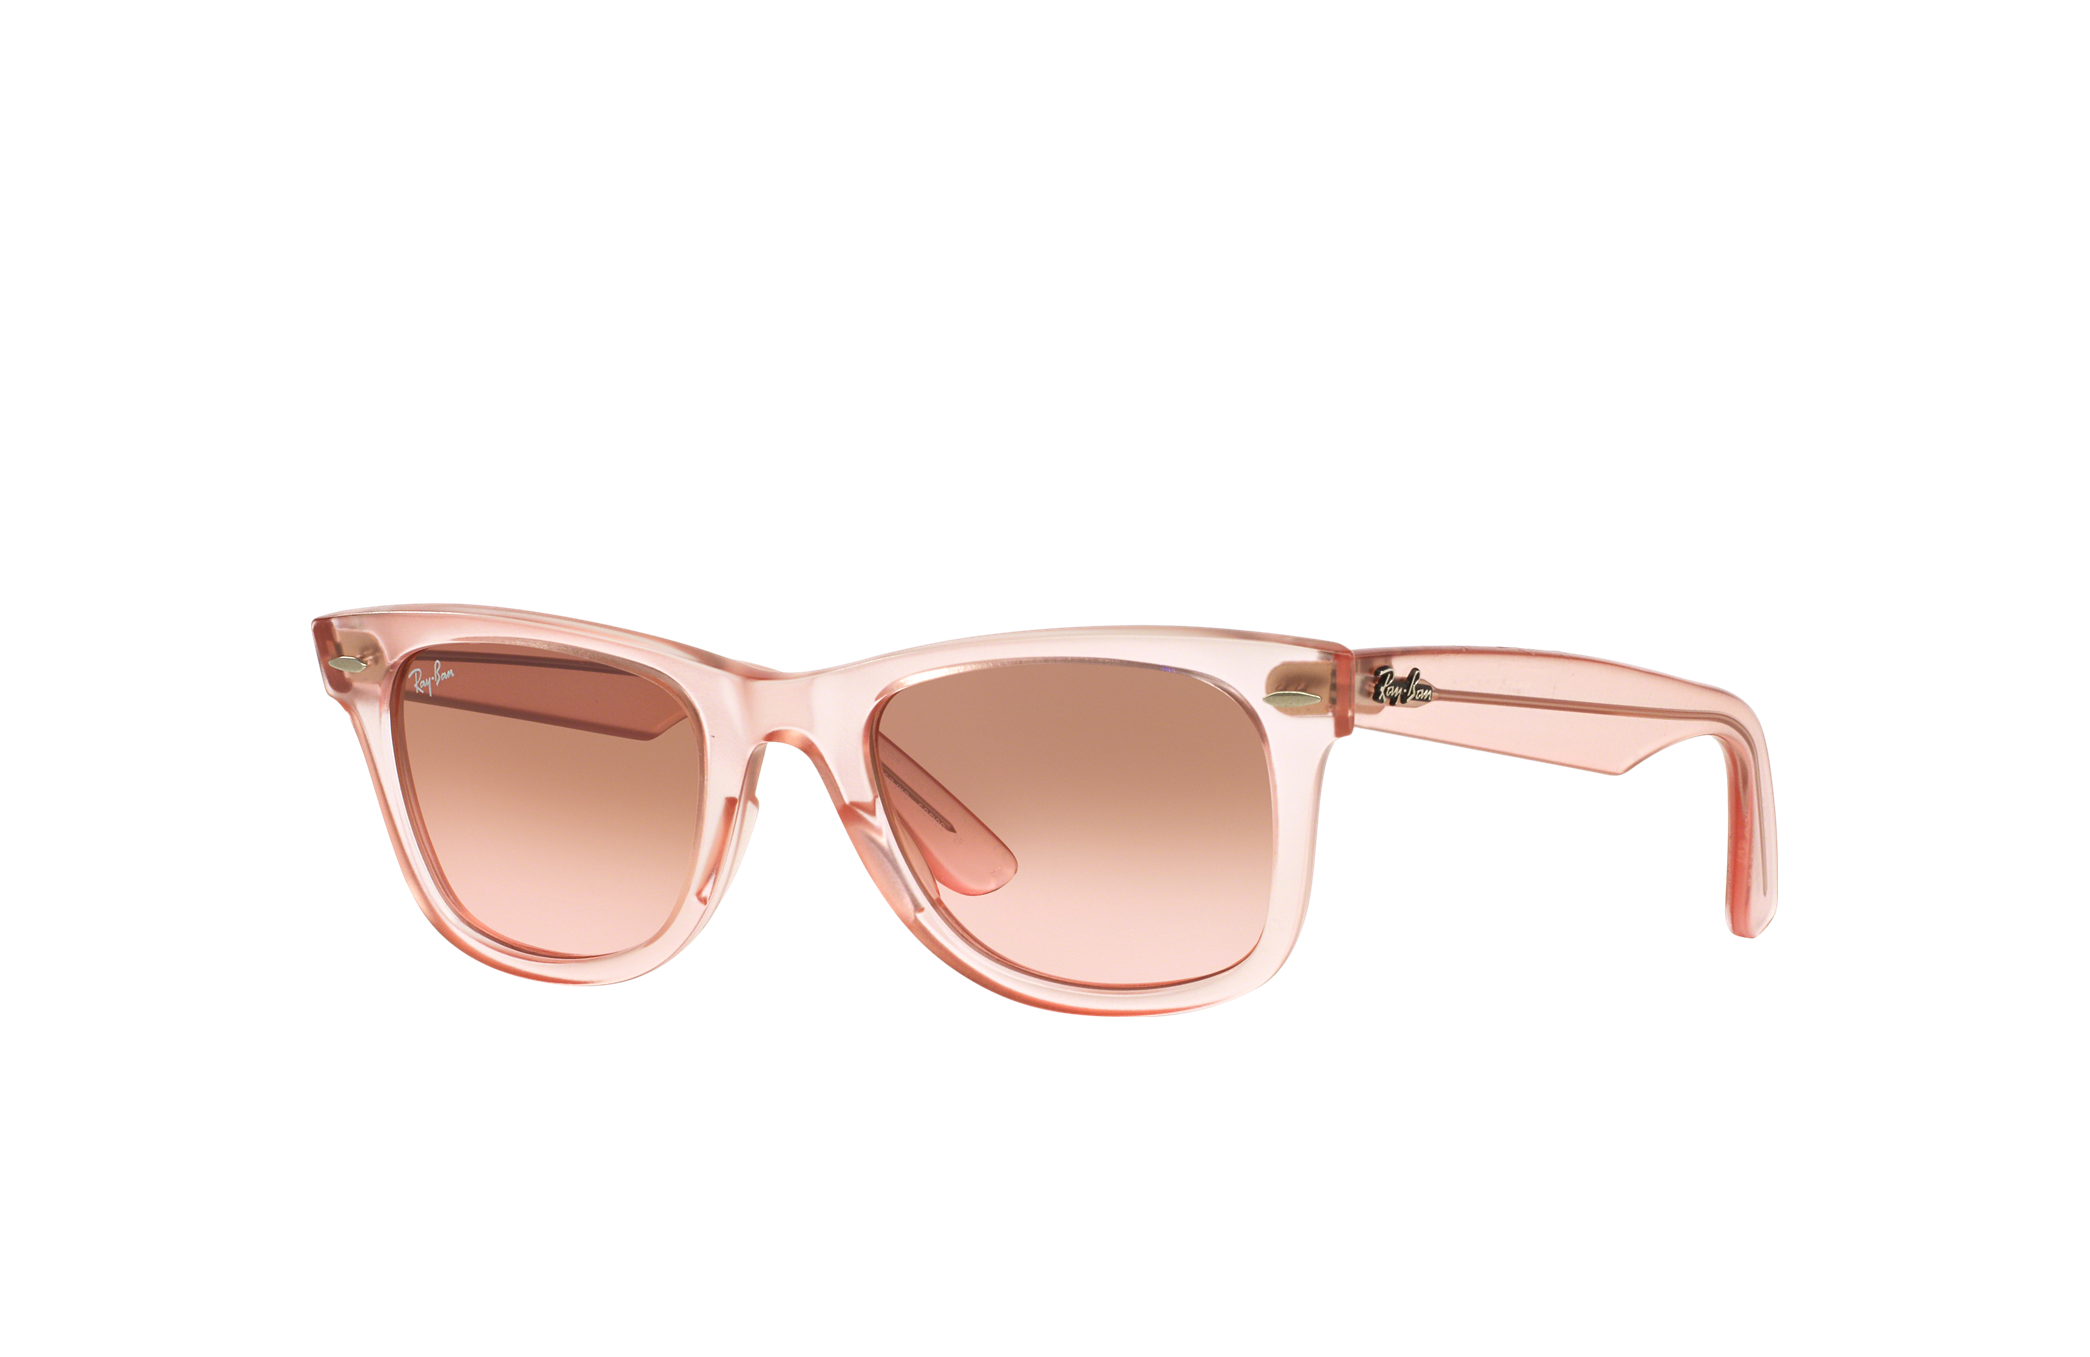 wetenschapper Hulpeloosheid Centrum Original Wayfarer Ice Pops Sunglasses in Pink and Brown/Pink | Ray-Ban®